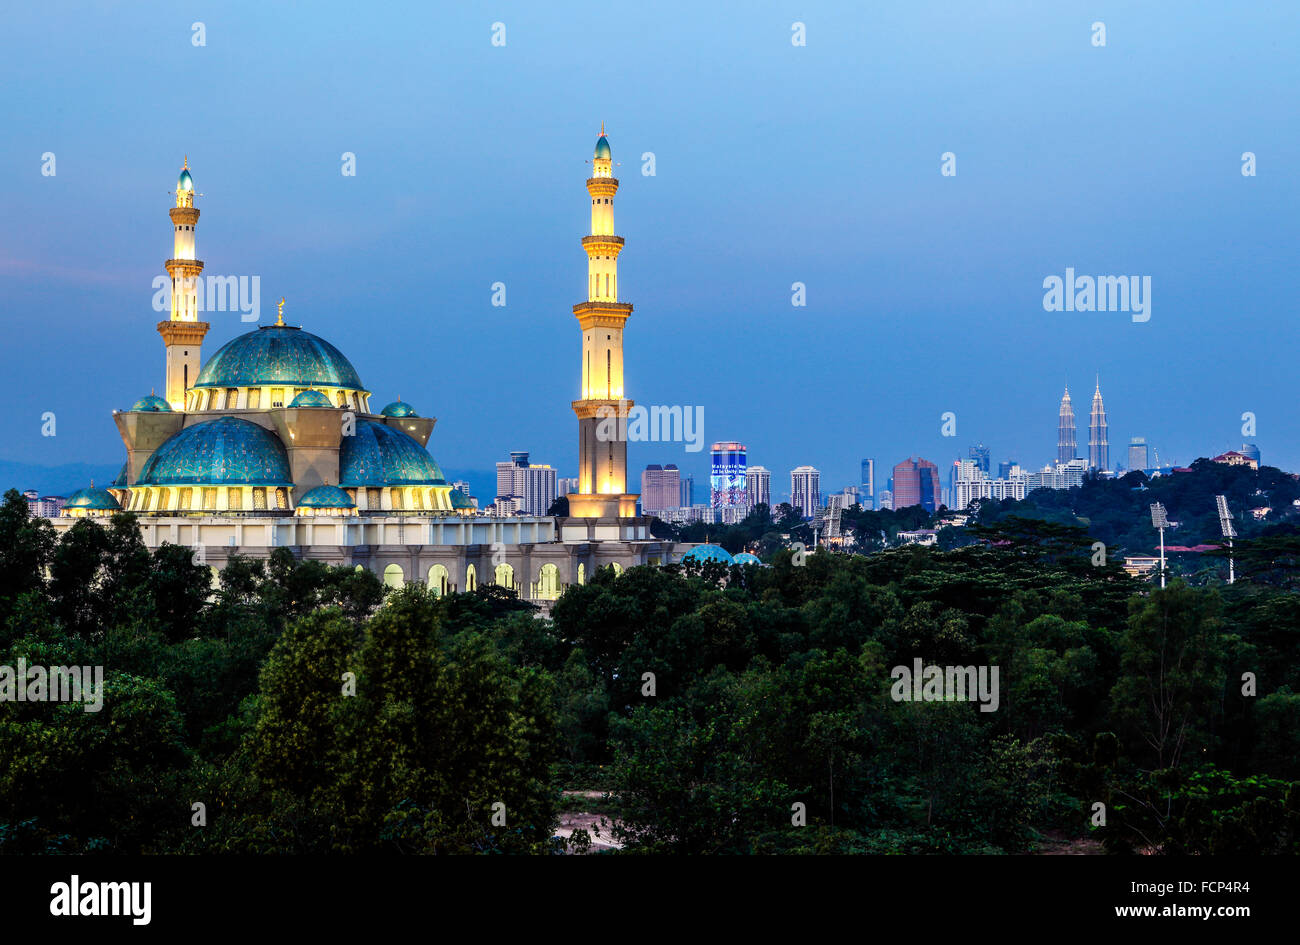 Le Wilayah mosquée de Kuala Lumpur, en Malaisie, au crépuscule. Banque D'Images